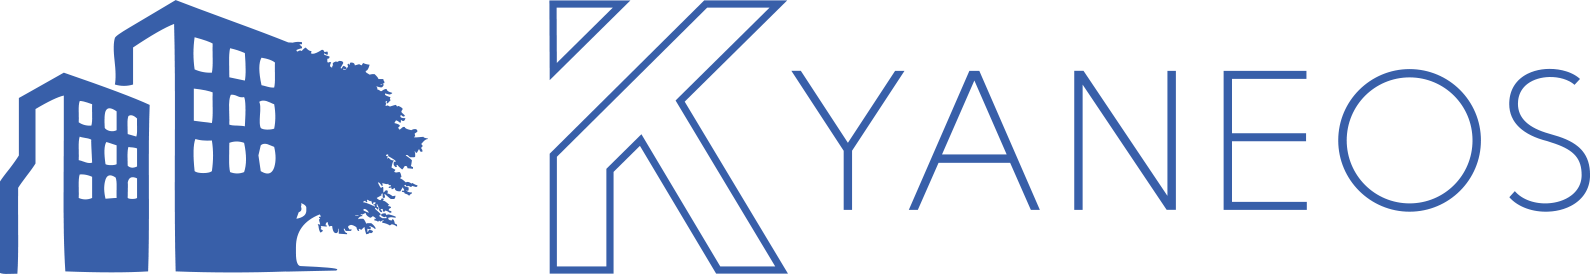 Kyaneos logo